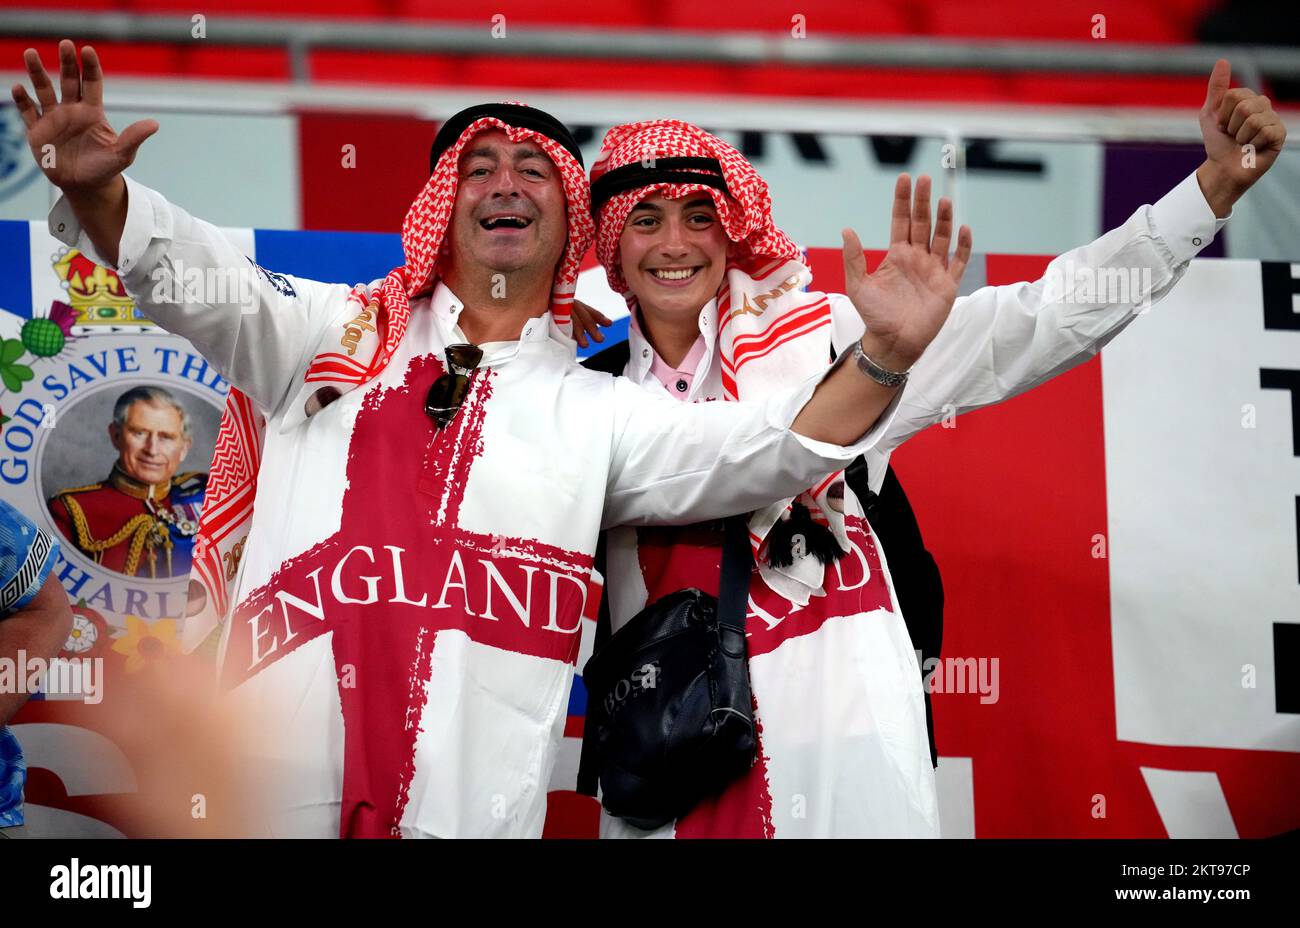 Les fans d'Angleterre avant le match de la coupe du monde de la FIFA du groupe B au stade Ahmad Bin Ali, Al Rayyan, Qatar. Date de la photo: Mardi 29 novembre 2022. Banque D'Images